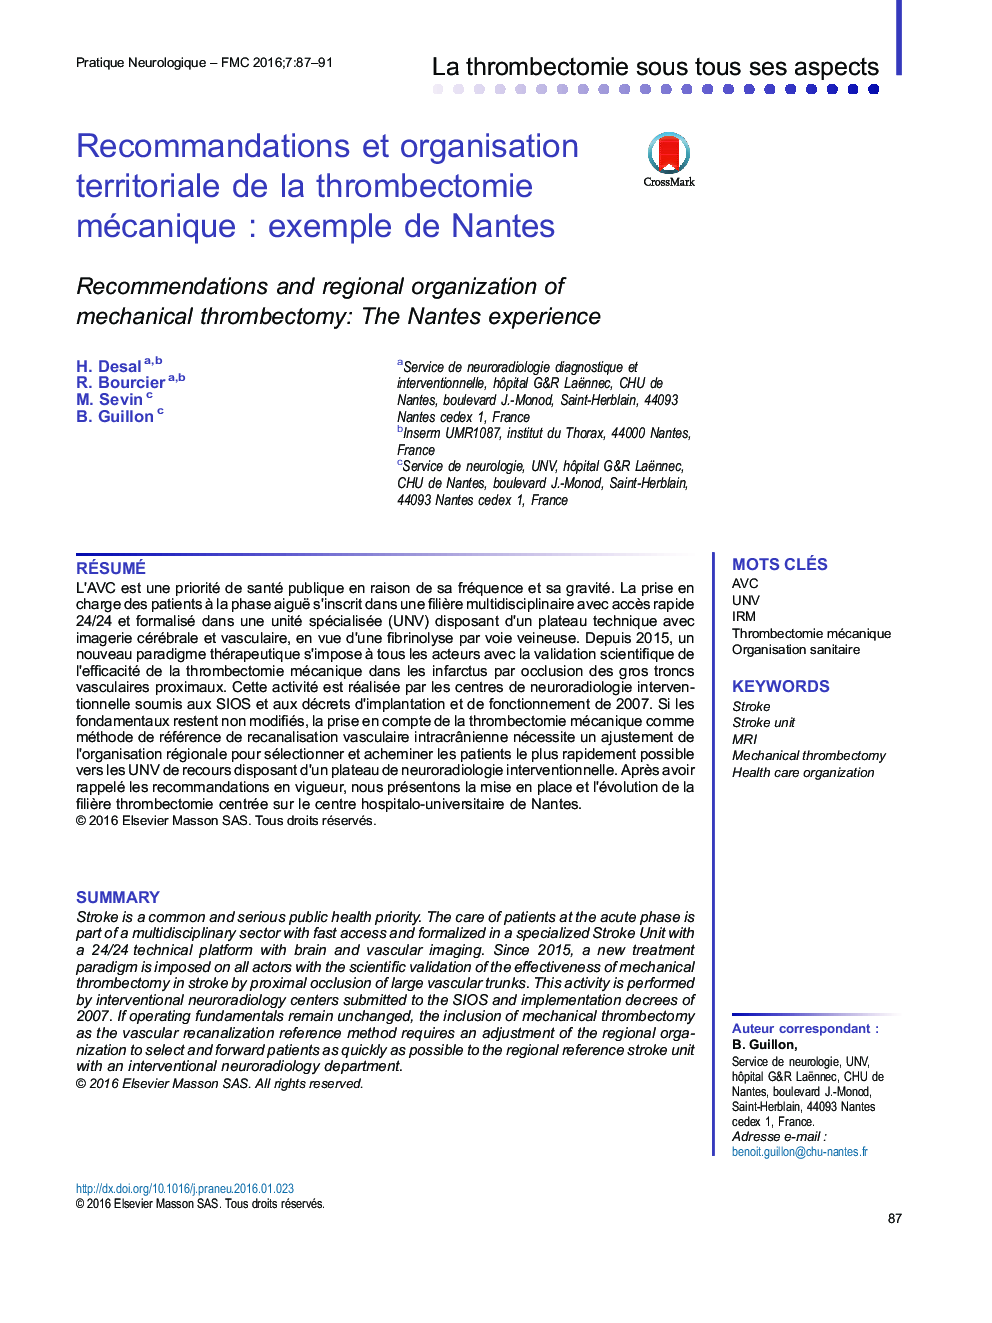 Recommandations et organisation territoriale de la thrombectomie mécaniqueÂ : exemple de Nantes